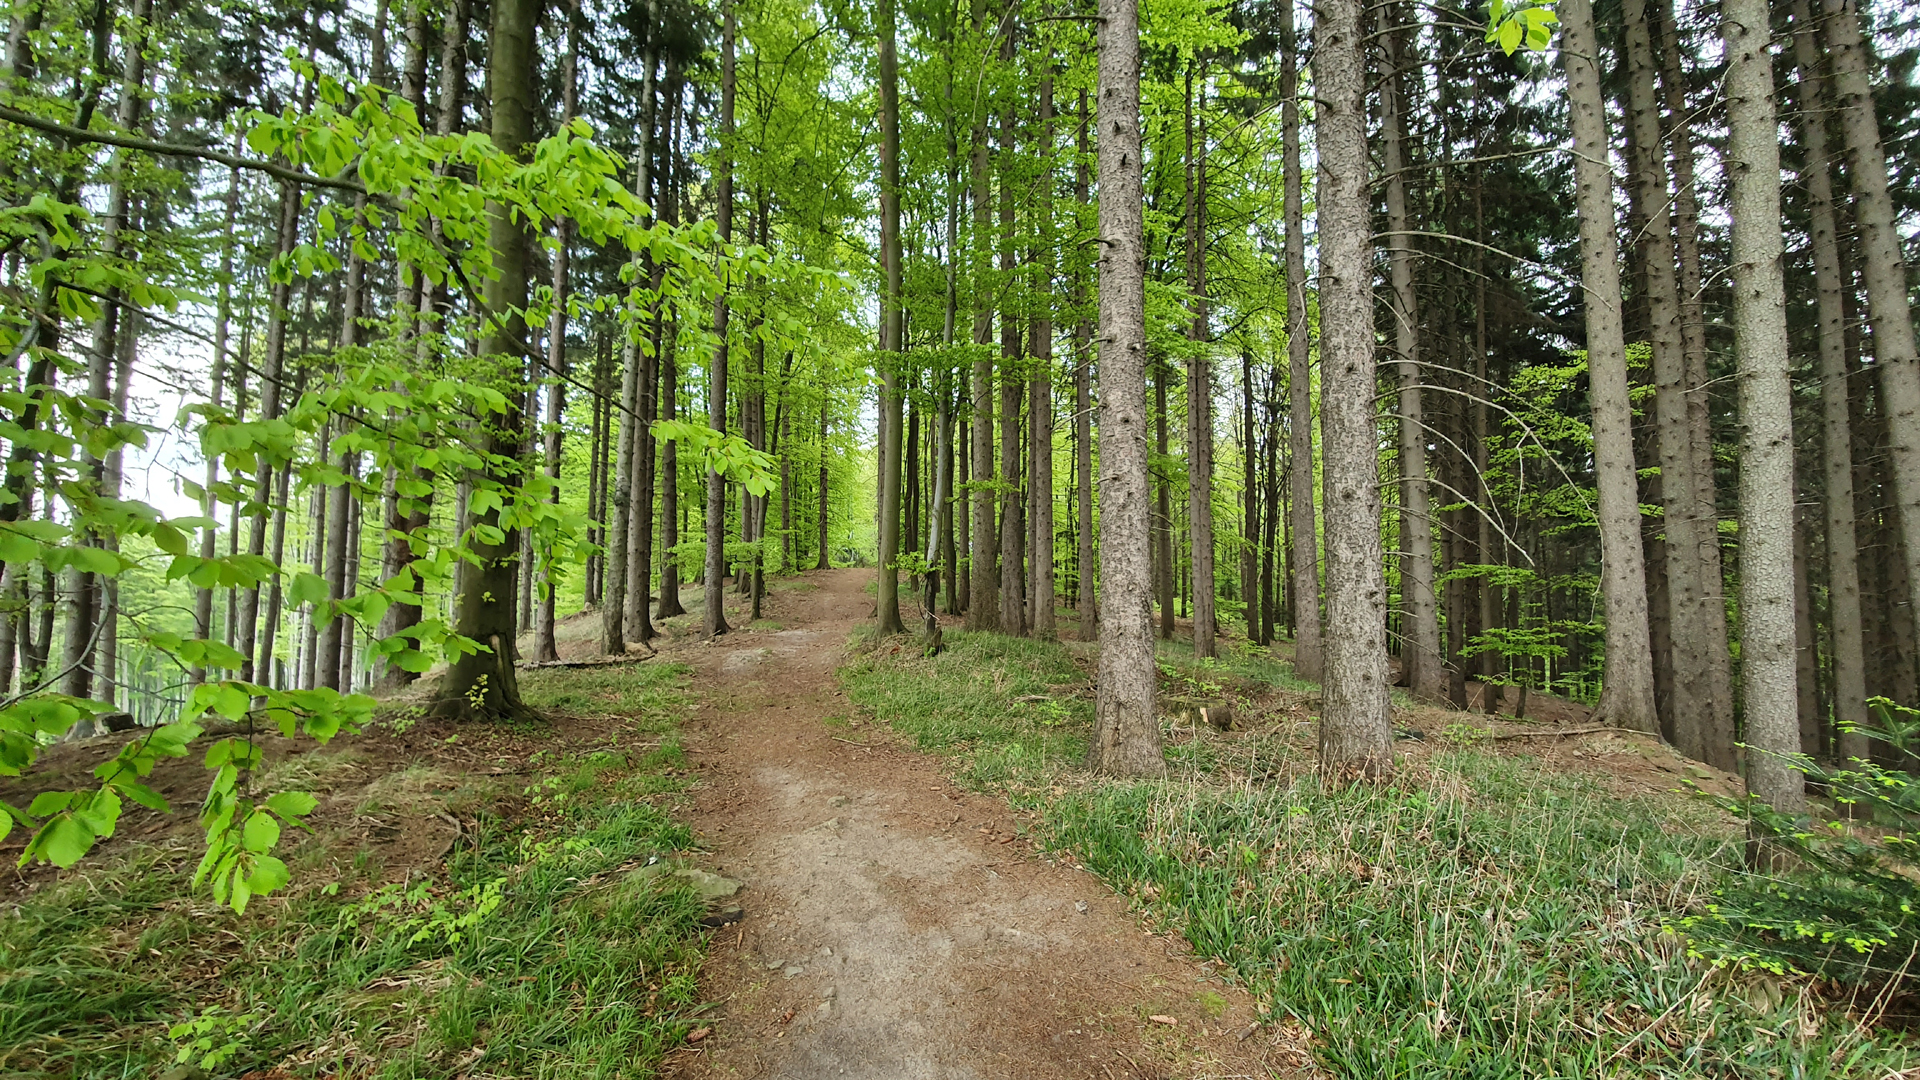 Europ�ische Union Waldstrategie